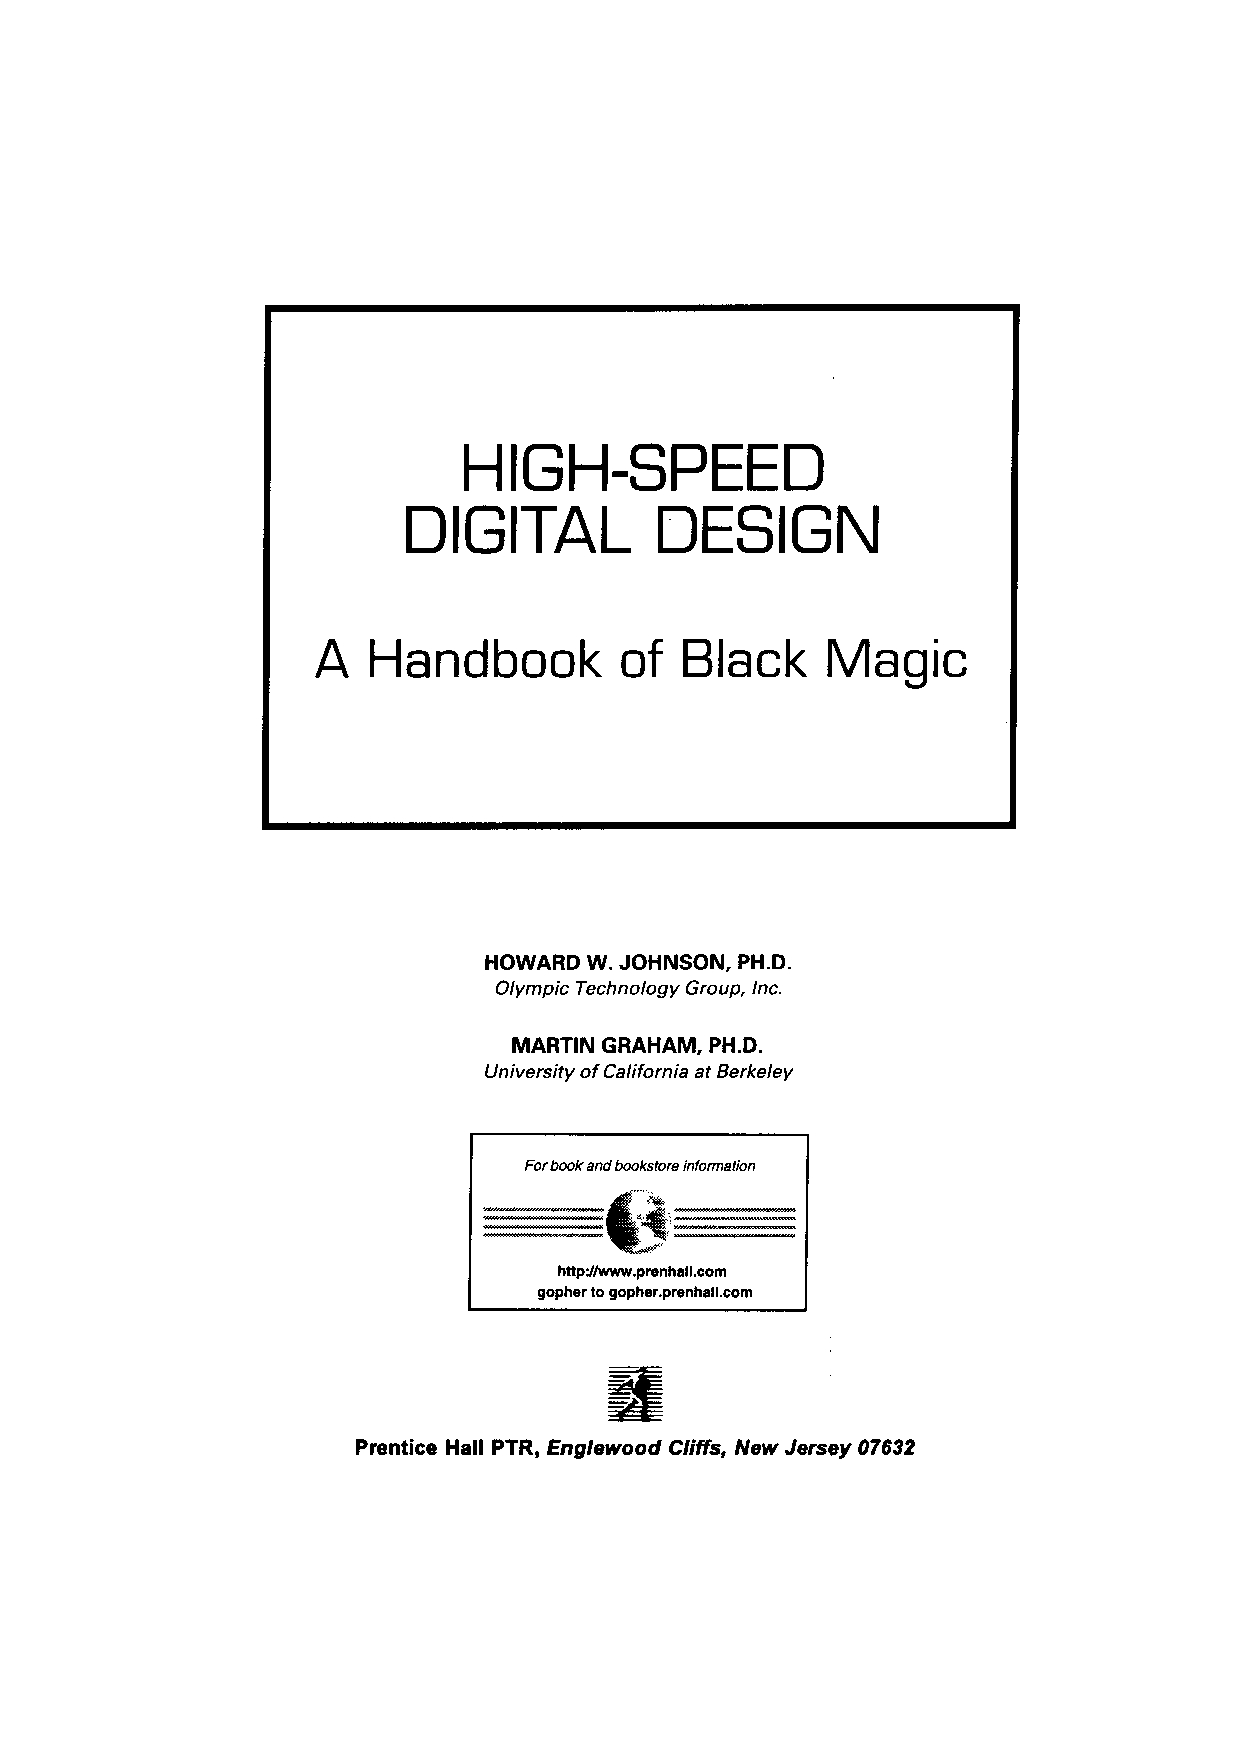 High-speed Digital Design - Johnson & Graham PDF Download - Service manual - Repair manual PDF ...